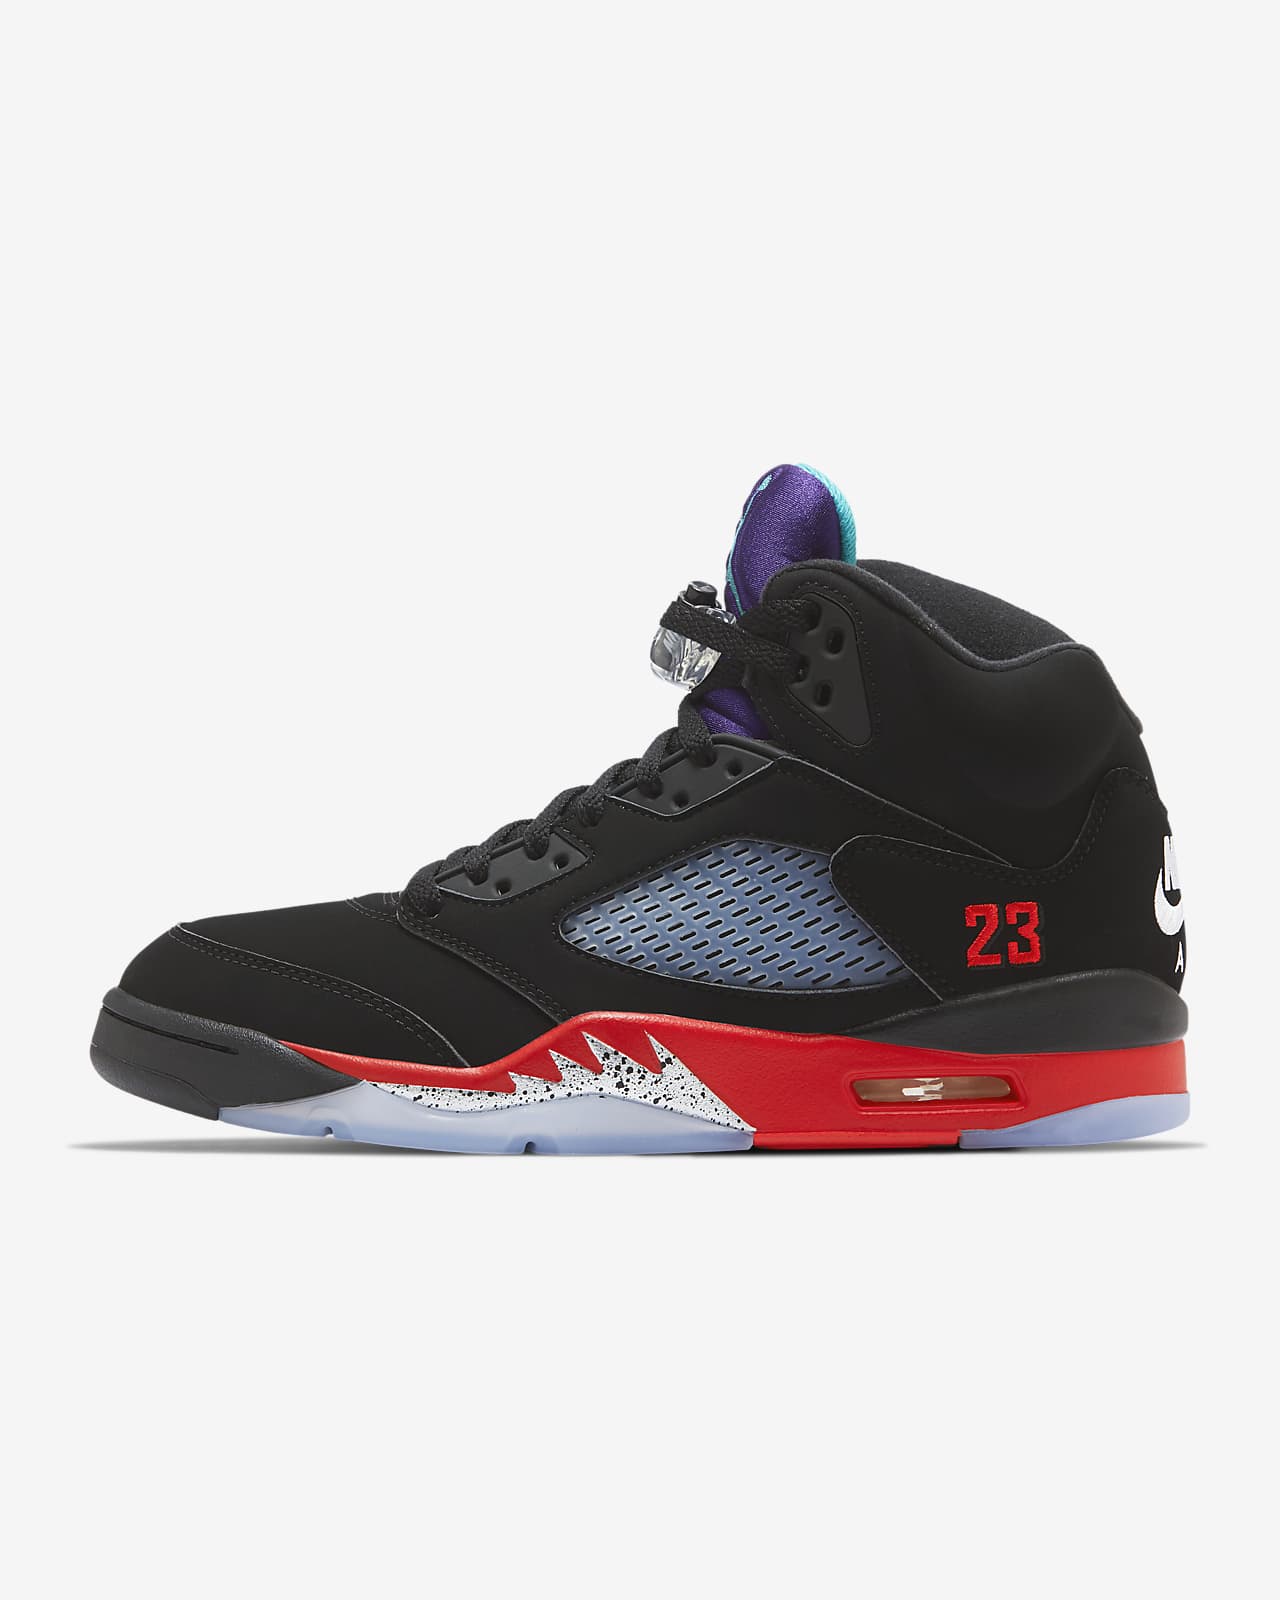 Air Jordan 5 Retro 鞋款。Nike TW